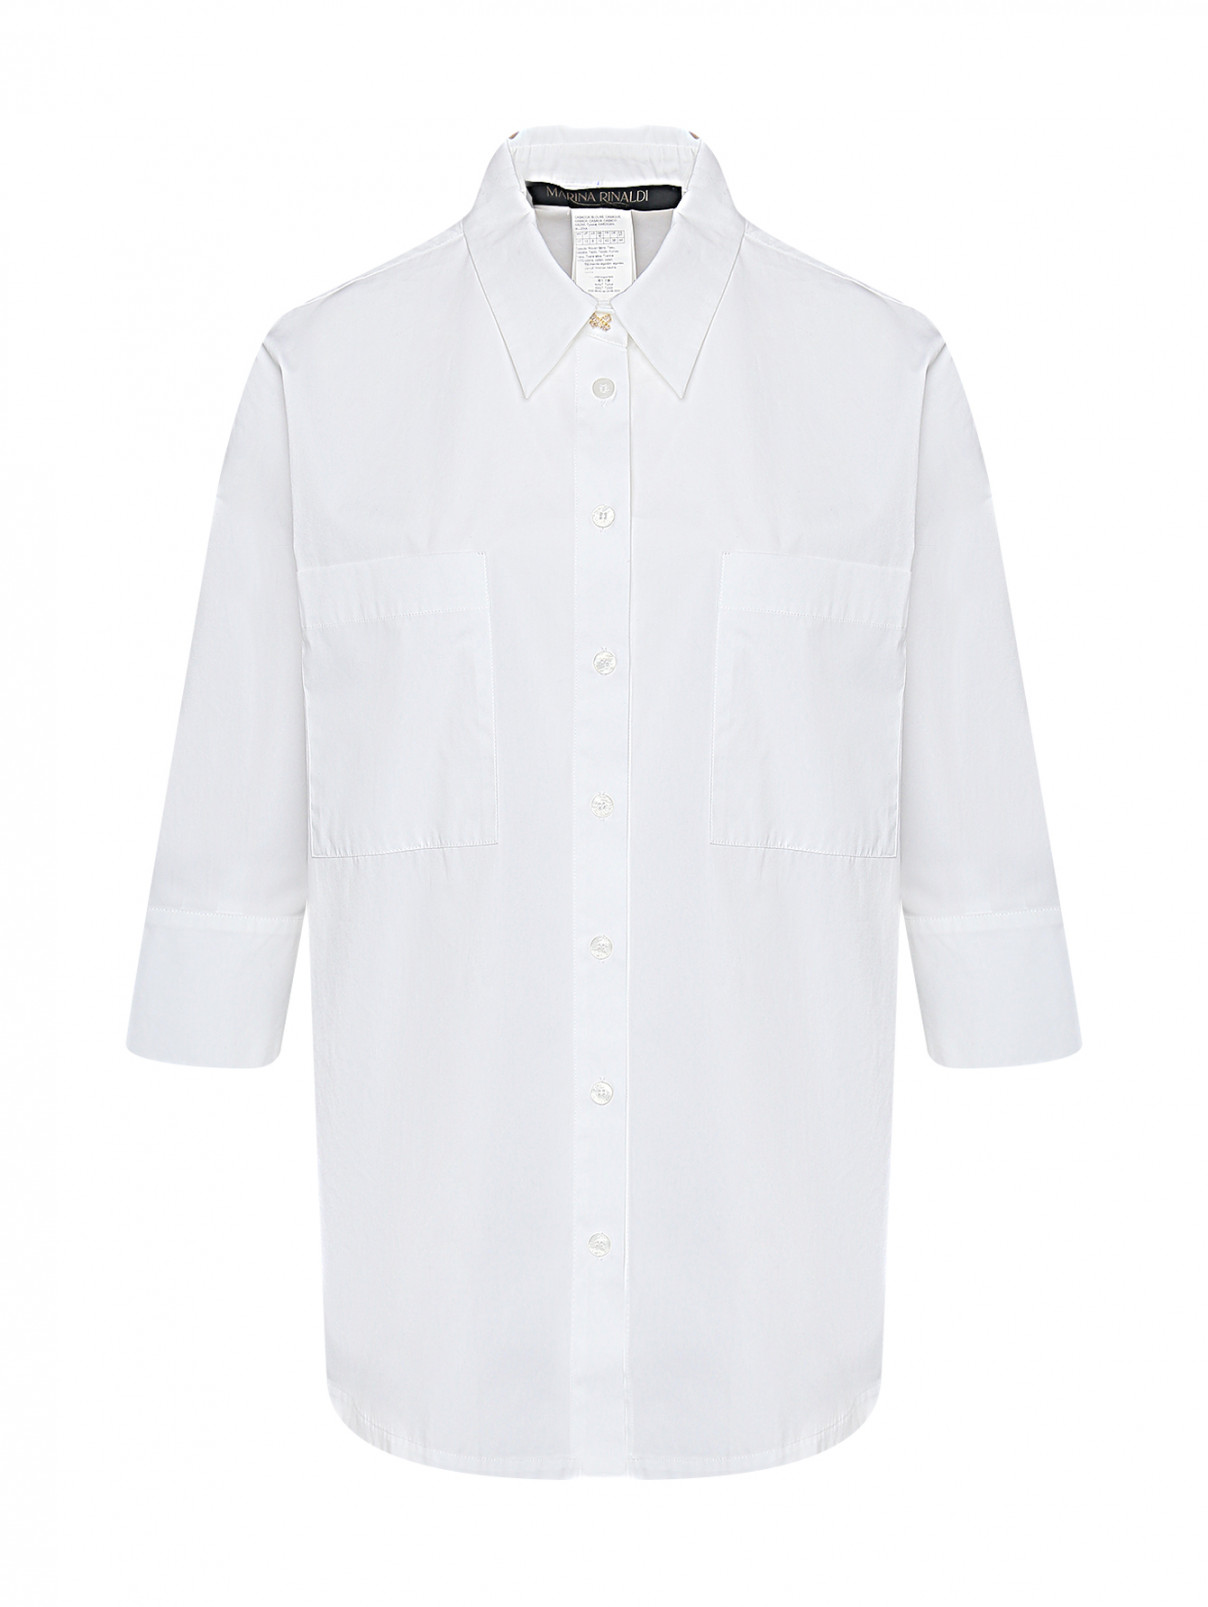 Рубашка из хлопка с карманами Marina Rinaldi  –  Общий вид  – Цвет:  Белый